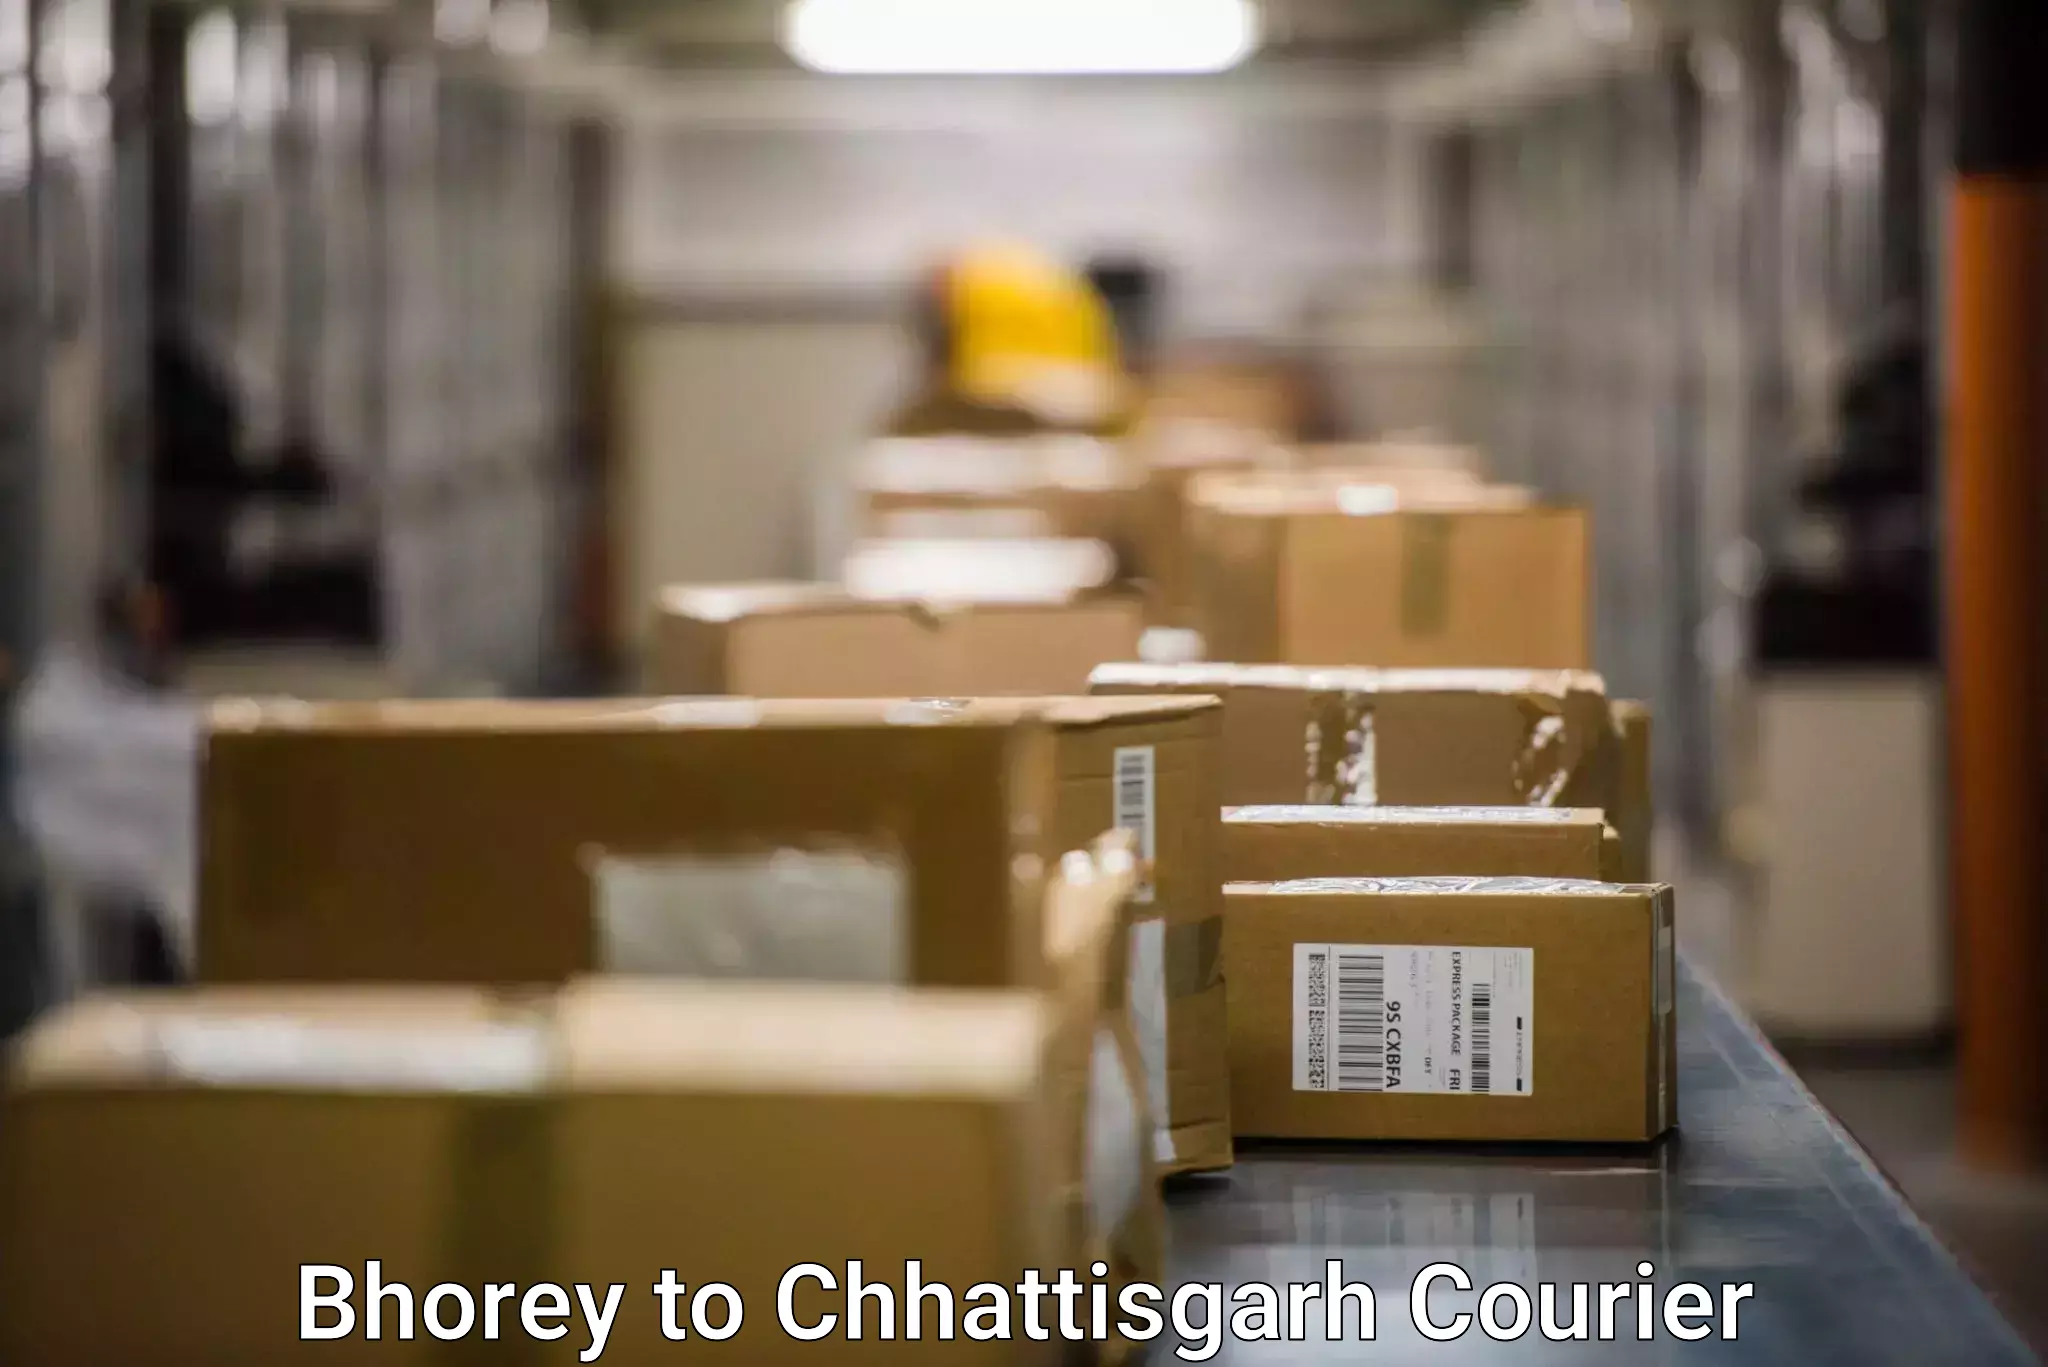 High-speed parcel service Bhorey to Chhattisgarh